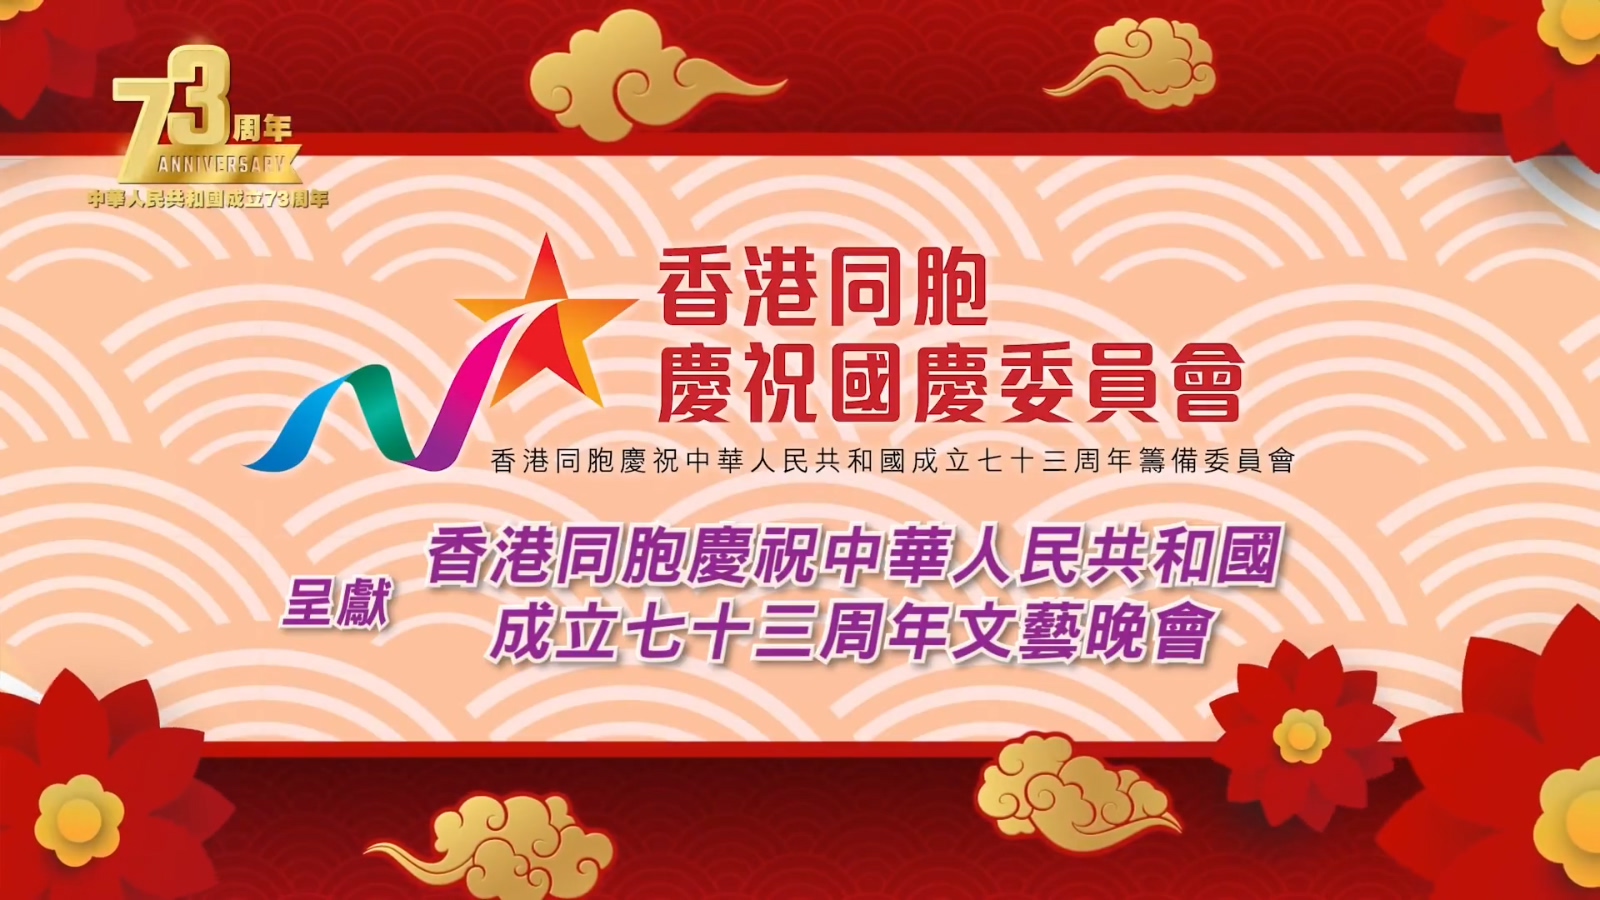 香港同胞庆祝中华人民共和国成立七十三周年文艺晚会-1080P .mp4_000002.576.jpg